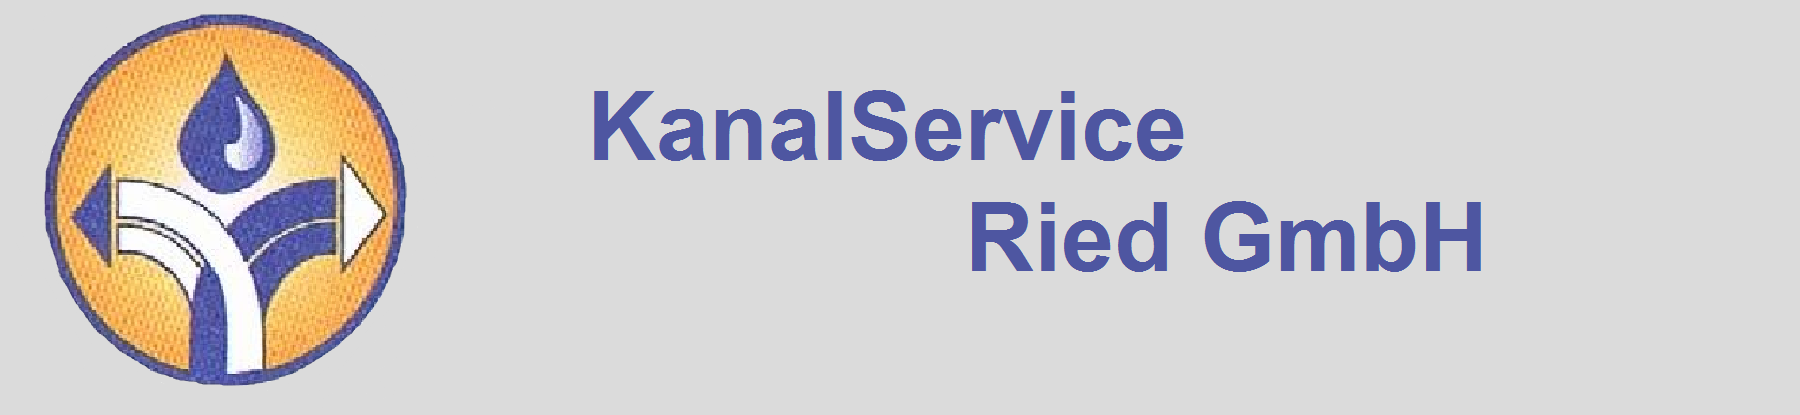 KanalService Ried GmbH - Logo